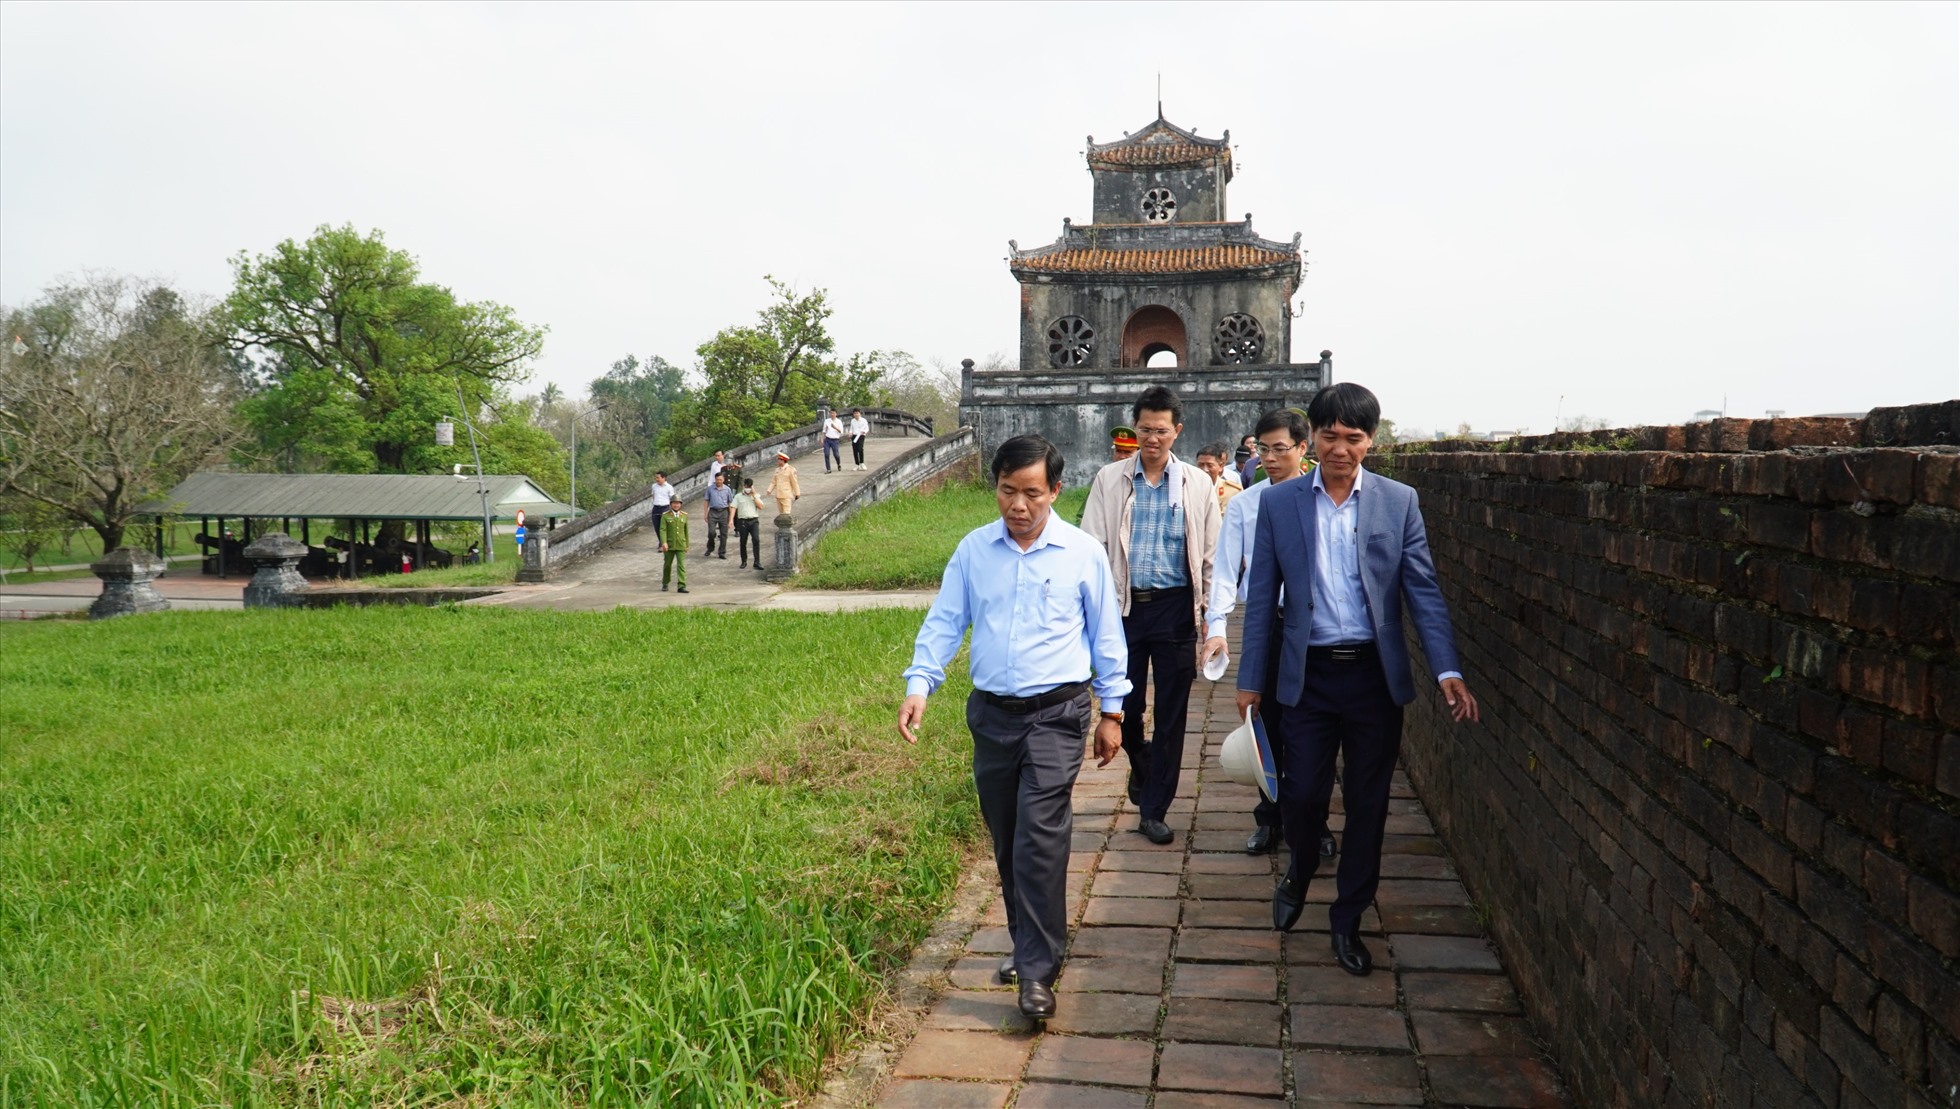 Đoàn công tác do Chủ tịch UBND tỉnh Thừa Thiên Huế Nguyễn Văn Phương dẫn đầu đã đi khảo sát thực địa, kiểm tra tổ chức giao thông khu vực Đại Nội Huế và khu vực phụ cận.